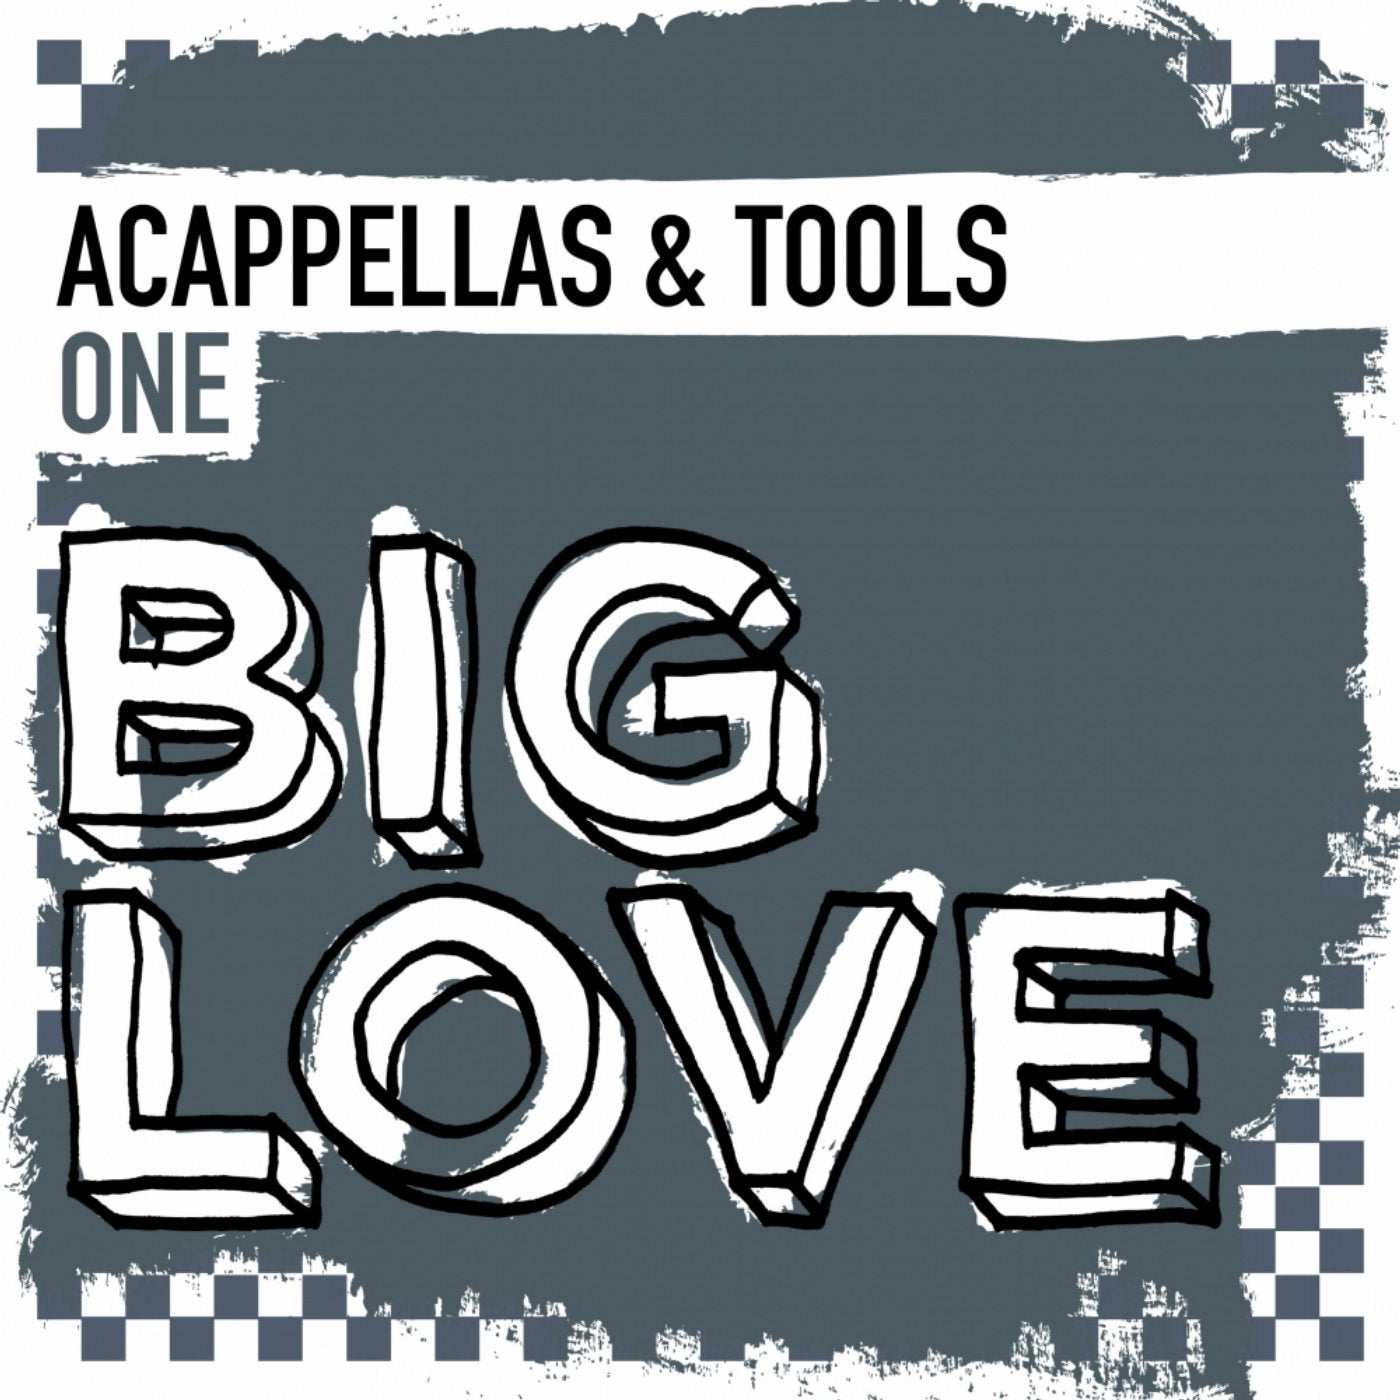 Big Love Acappellas & Tools One